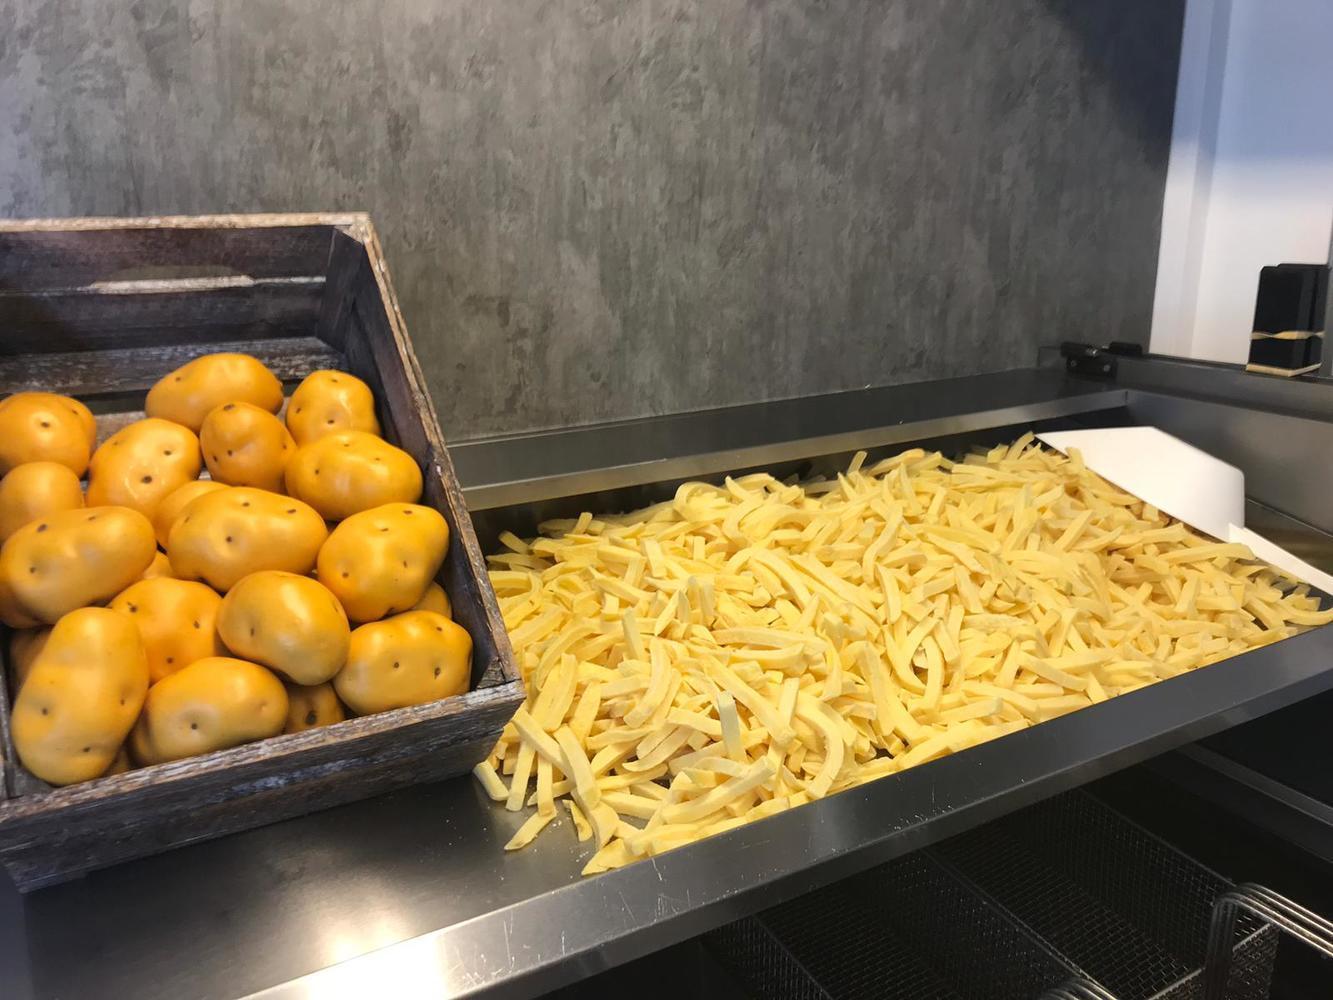 https://frietfestijn.nl/wp-content/uploads/2023/01/afbeelding-friet-met-aardappels-in-een-bak.jpeg